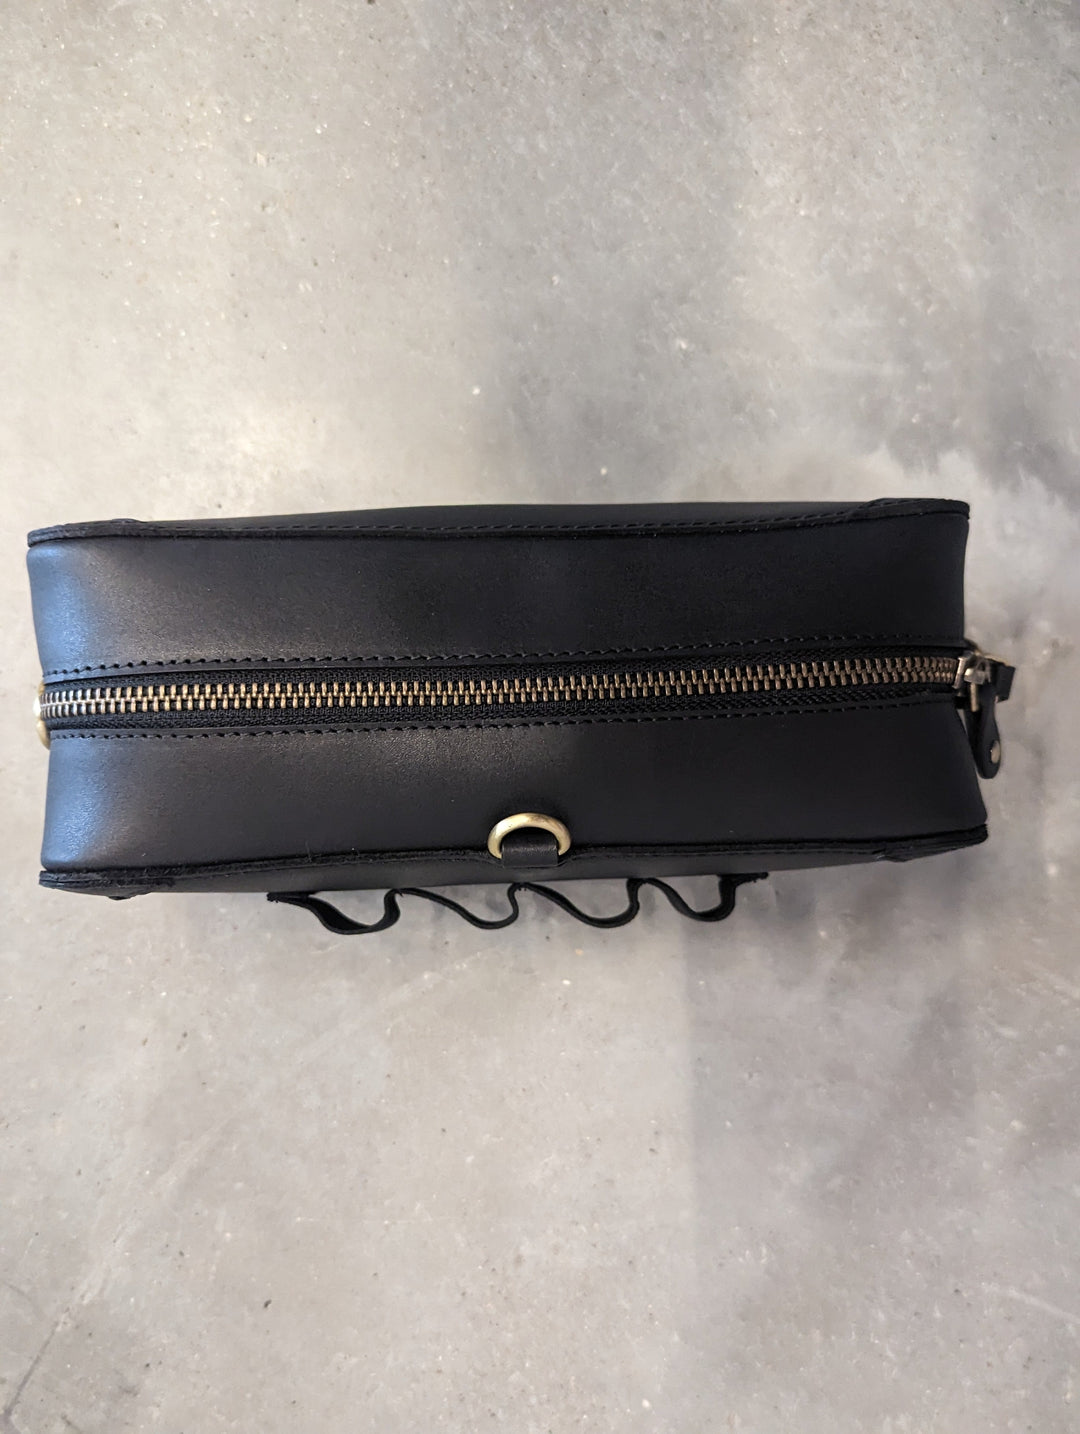 Leather Knuckle Bag v2.0 Black